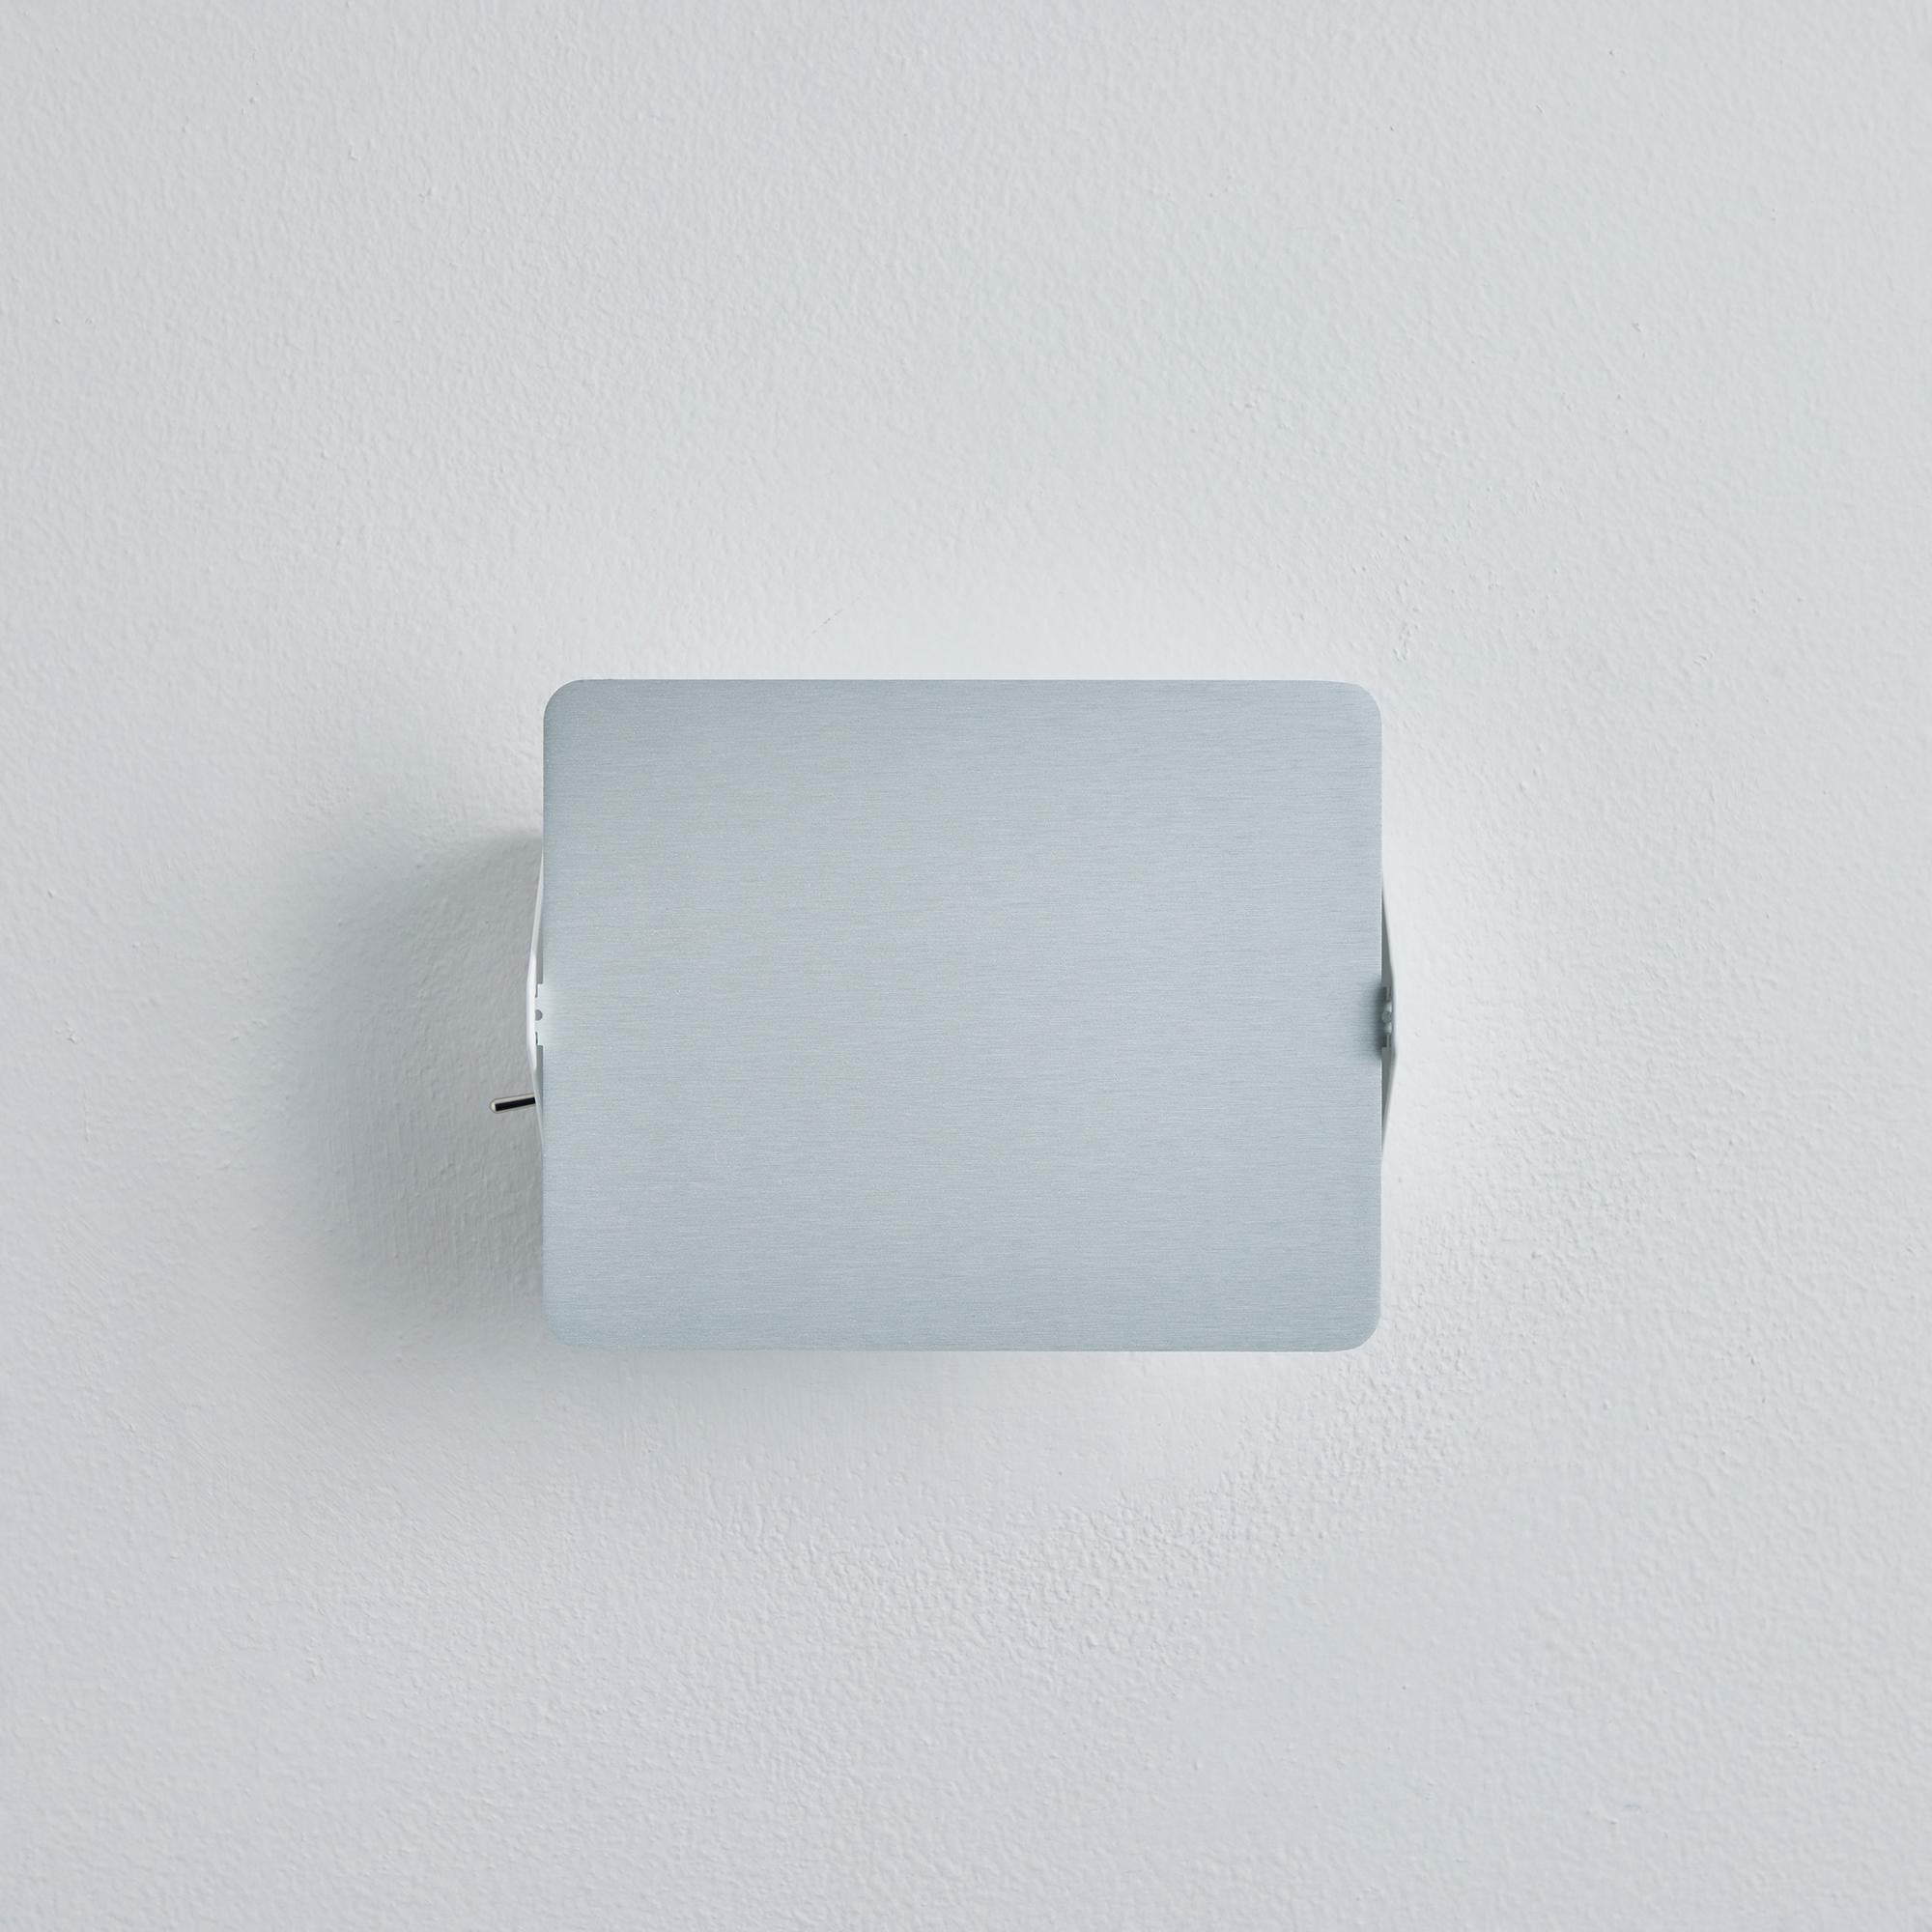 Charlotte Perriand 'Applique à Volet Pivotant' Wandleuchte aus Aluminium natur. Ein klares und ikonisches Design aus natürlich eloxiertem Aluminium und weiß lackiertem Metall. Ursprünglich in den 1950er Jahren als ikonische CP1 entworfen, werden